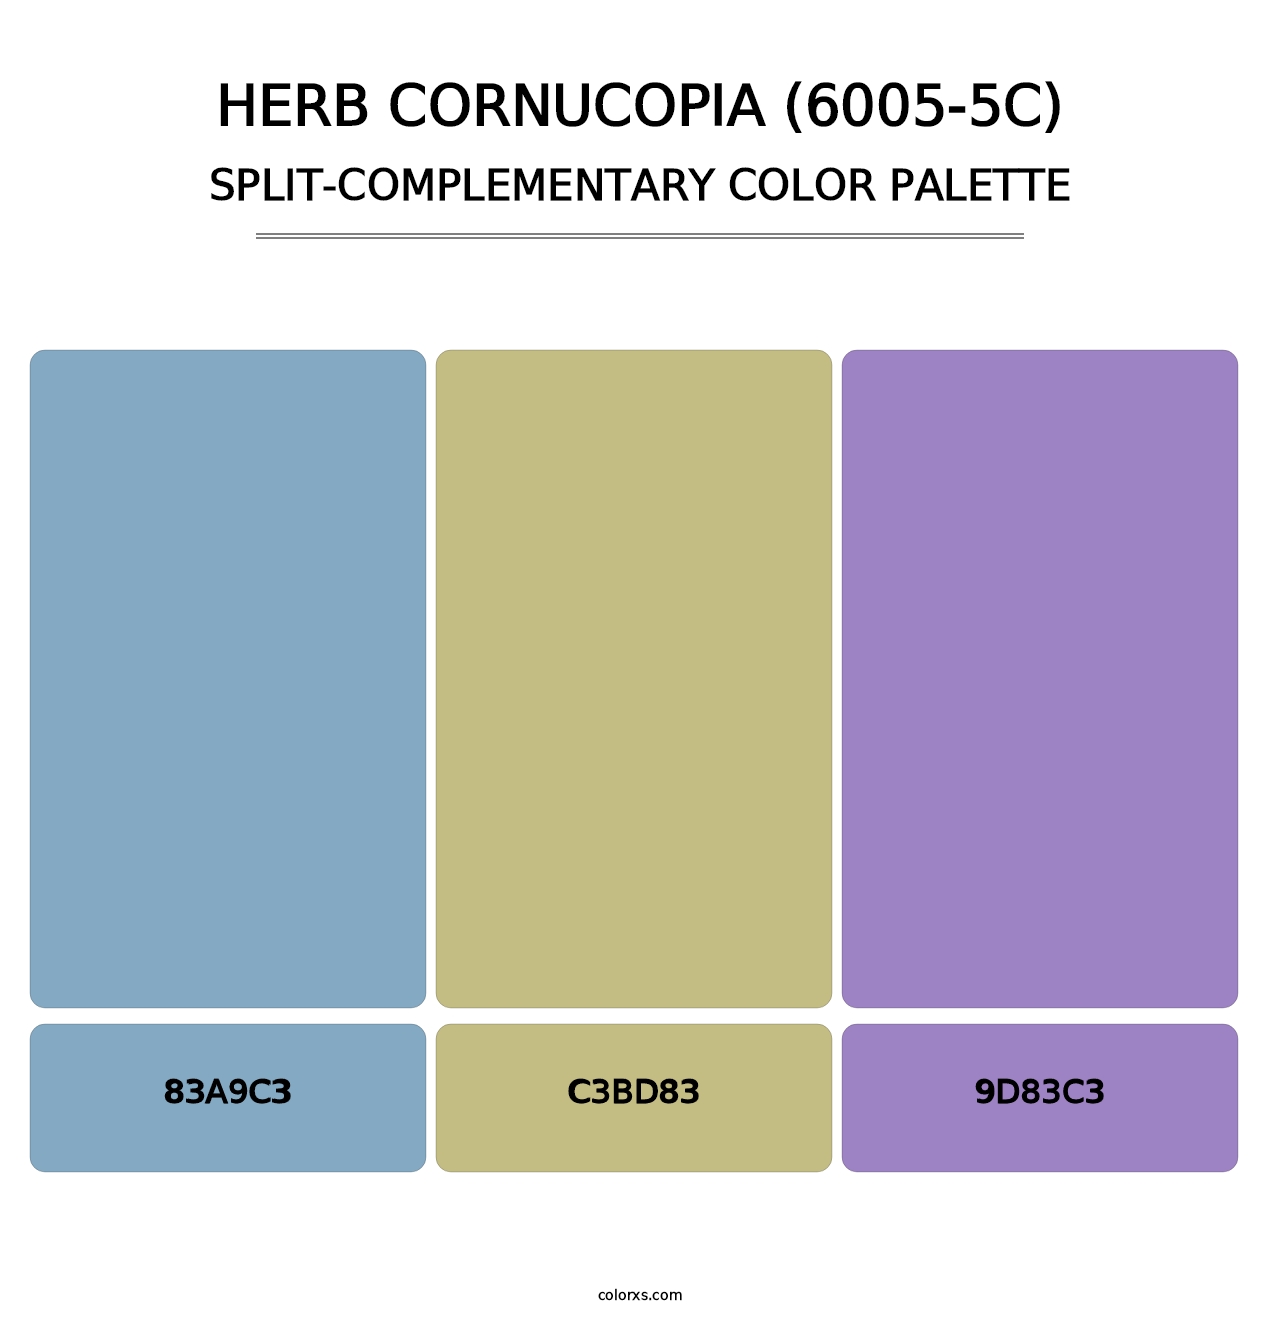 Herb Cornucopia (6005-5C) - Split-Complementary Color Palette